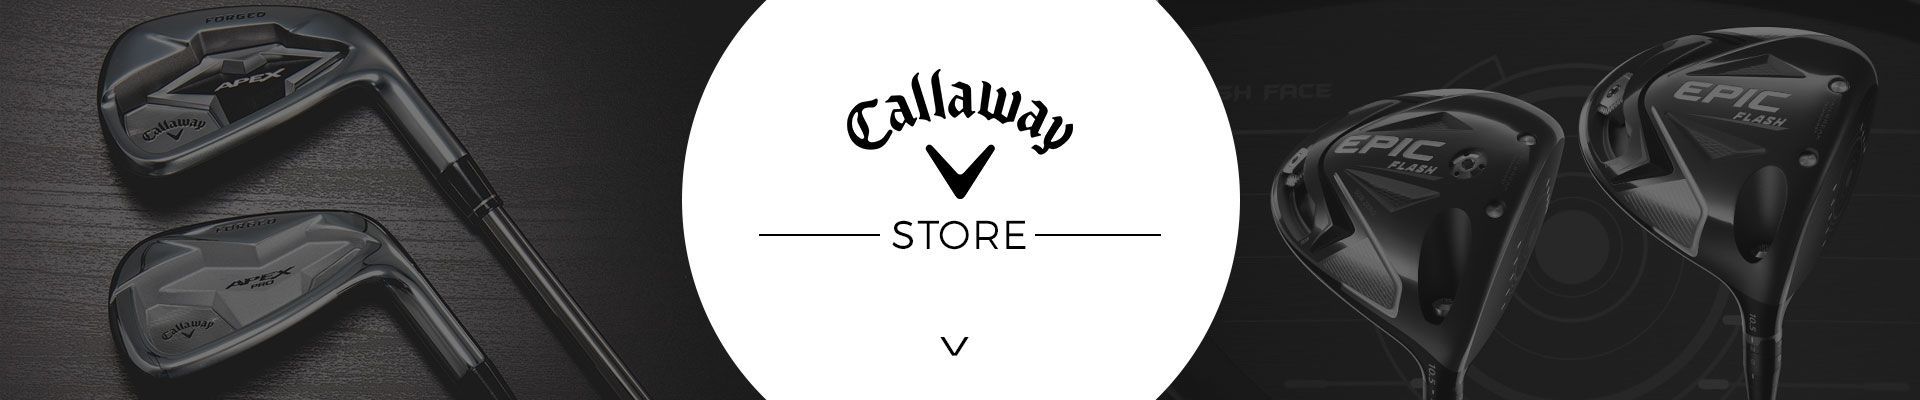 Callaway Store